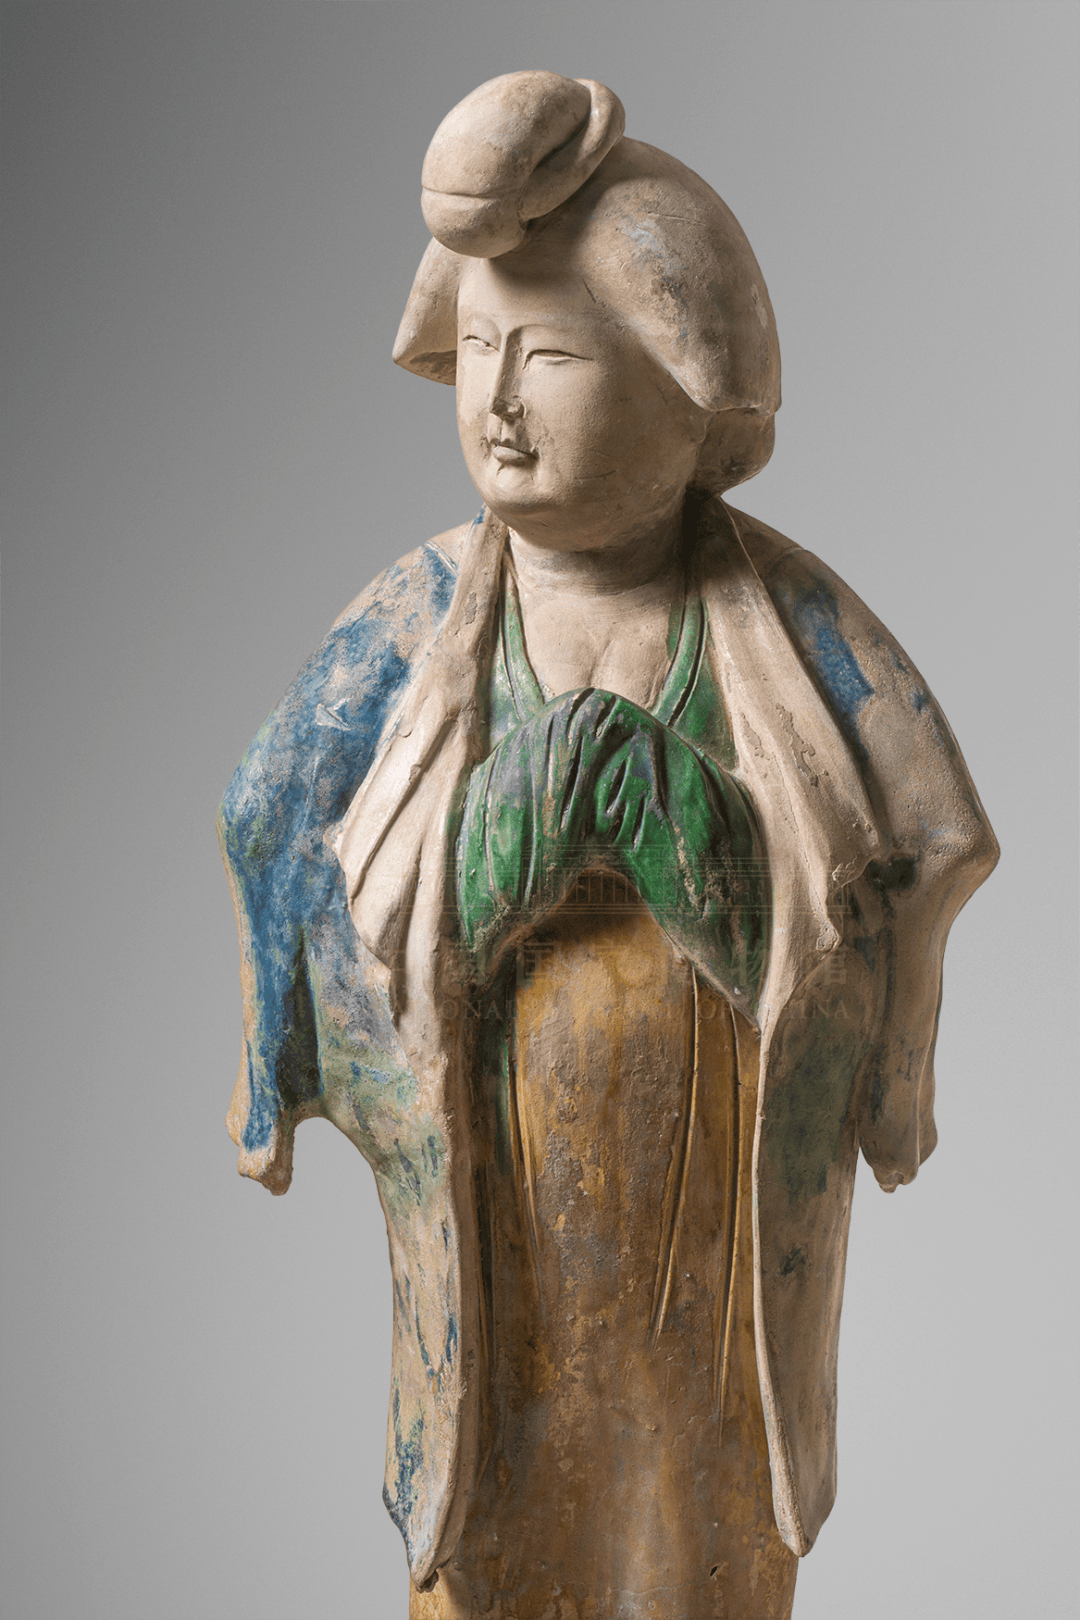 三彩釉陶侍女俑唐 开元十一年(公元723年)唐代妇女的发式丰富多彩,如